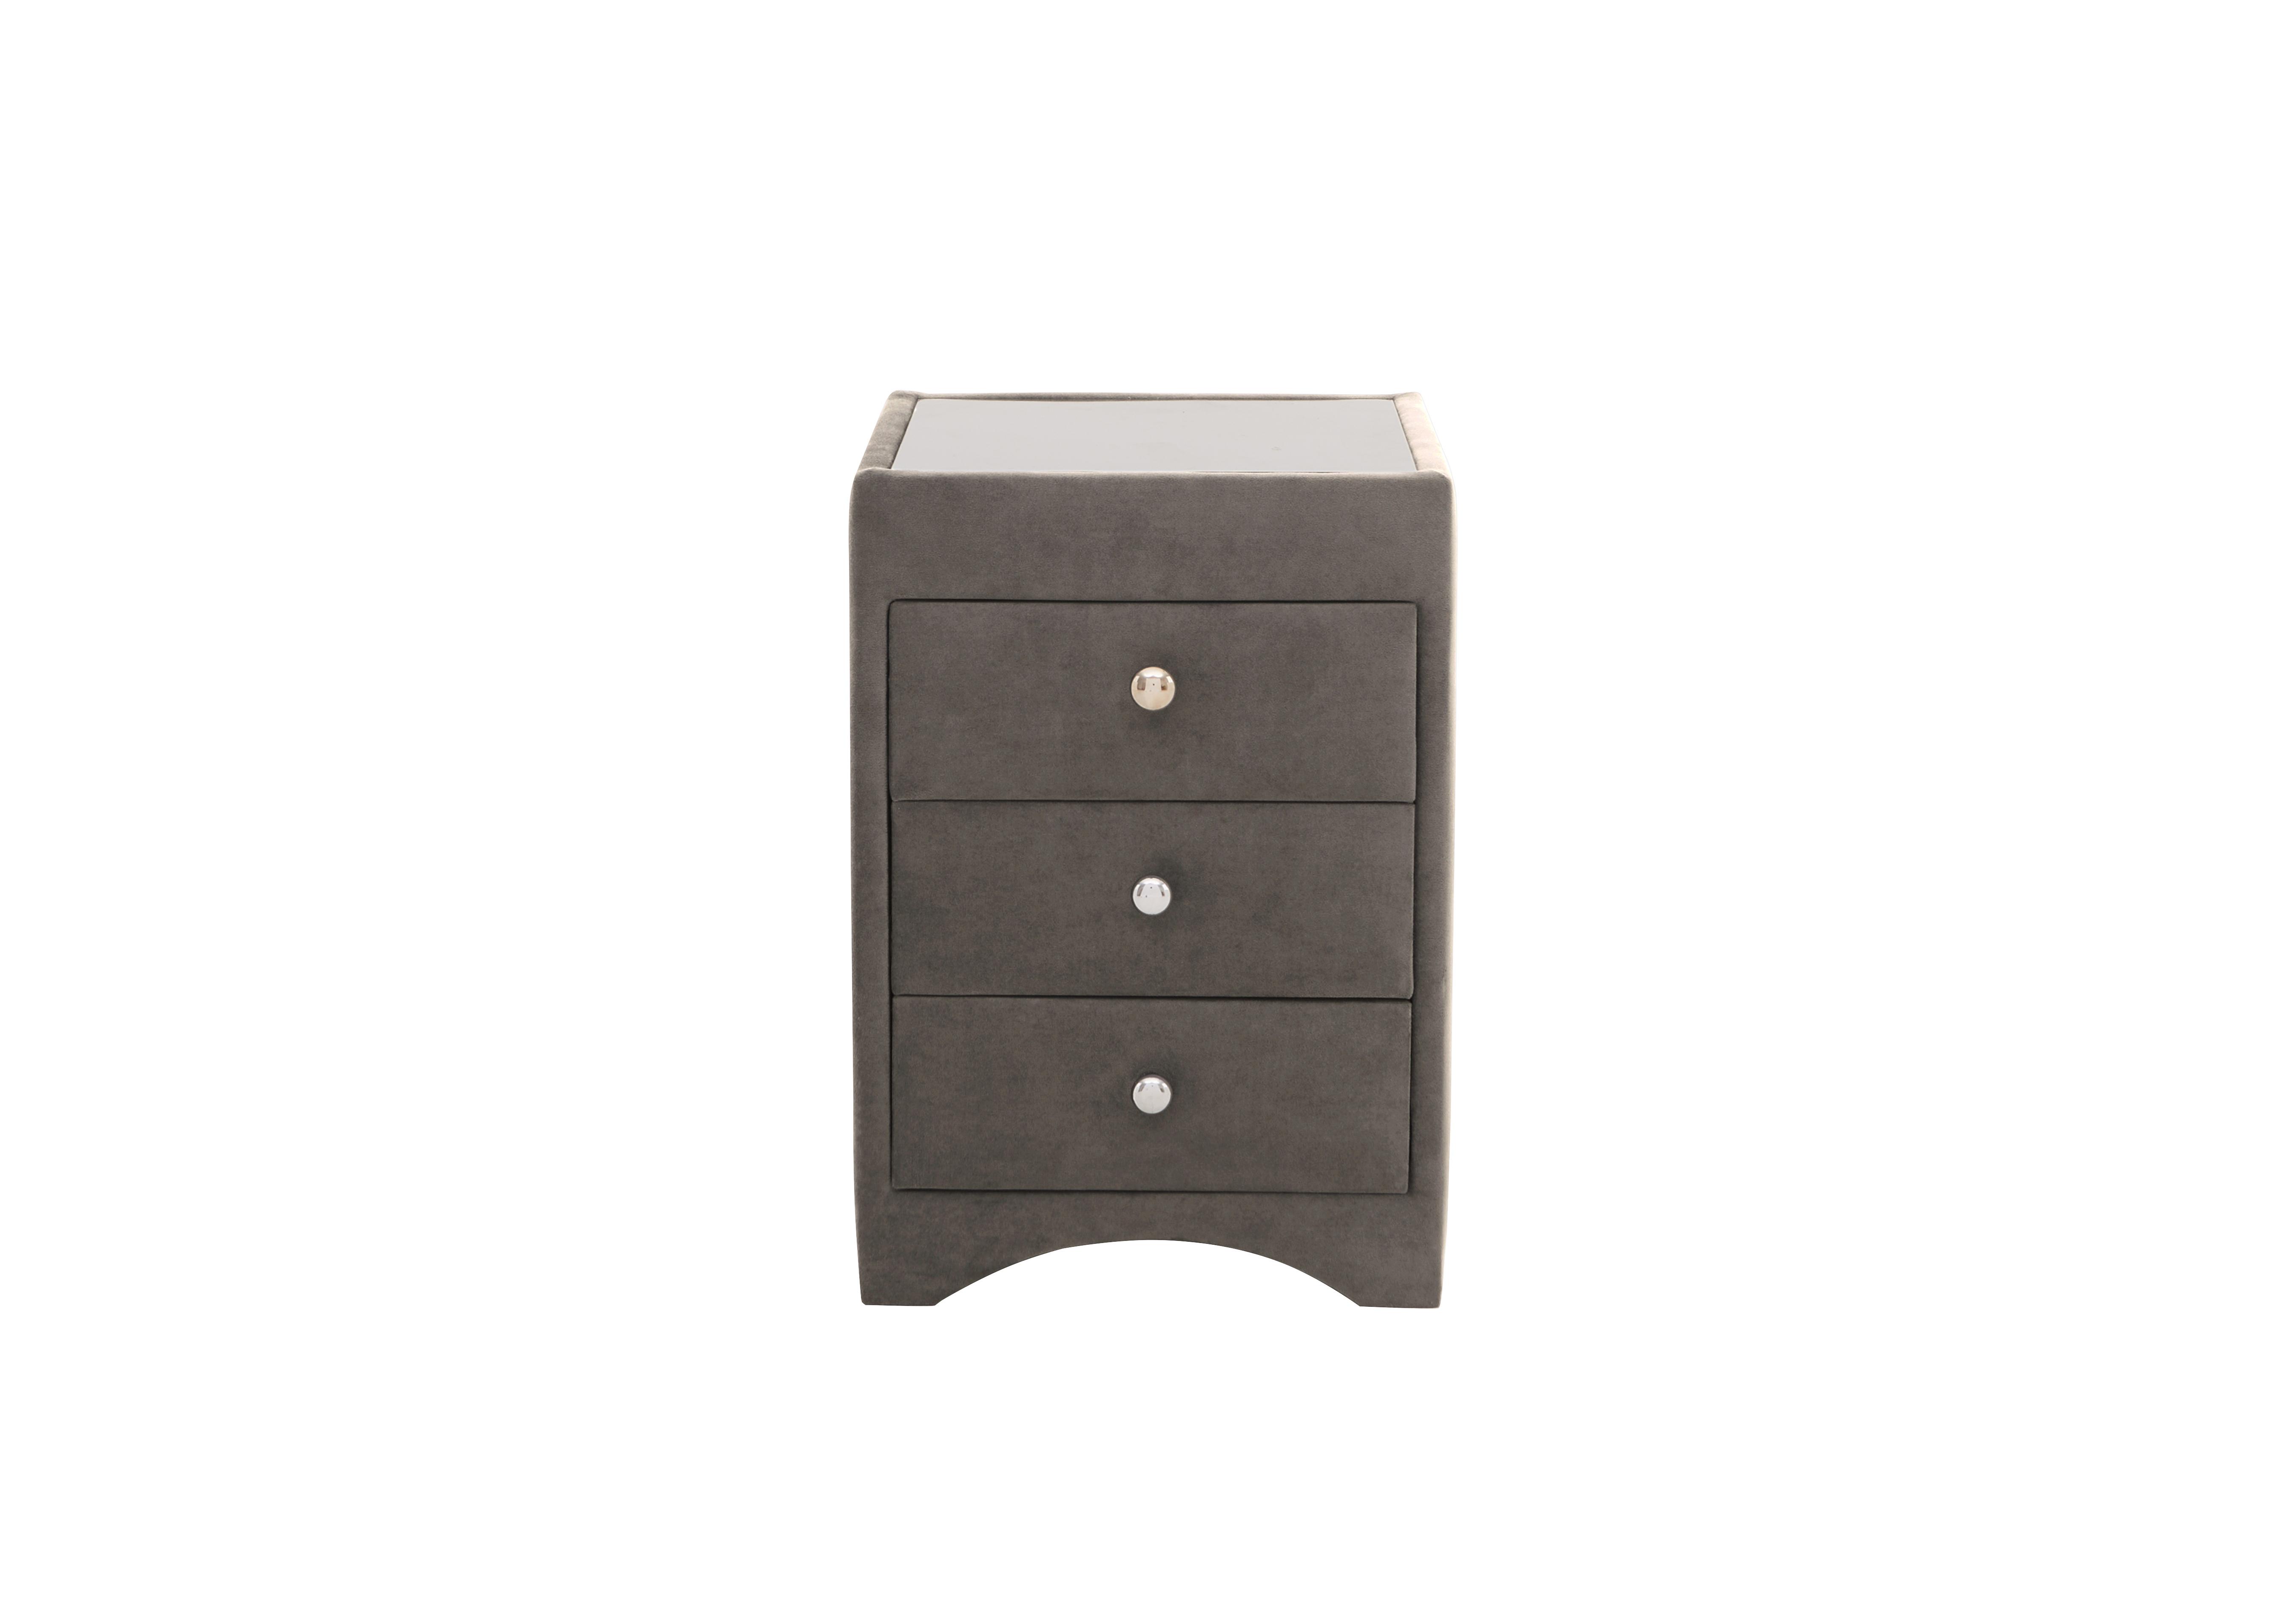 Ideal Calypso Bedside Cabinet in Krystal Grey on Furniture Village